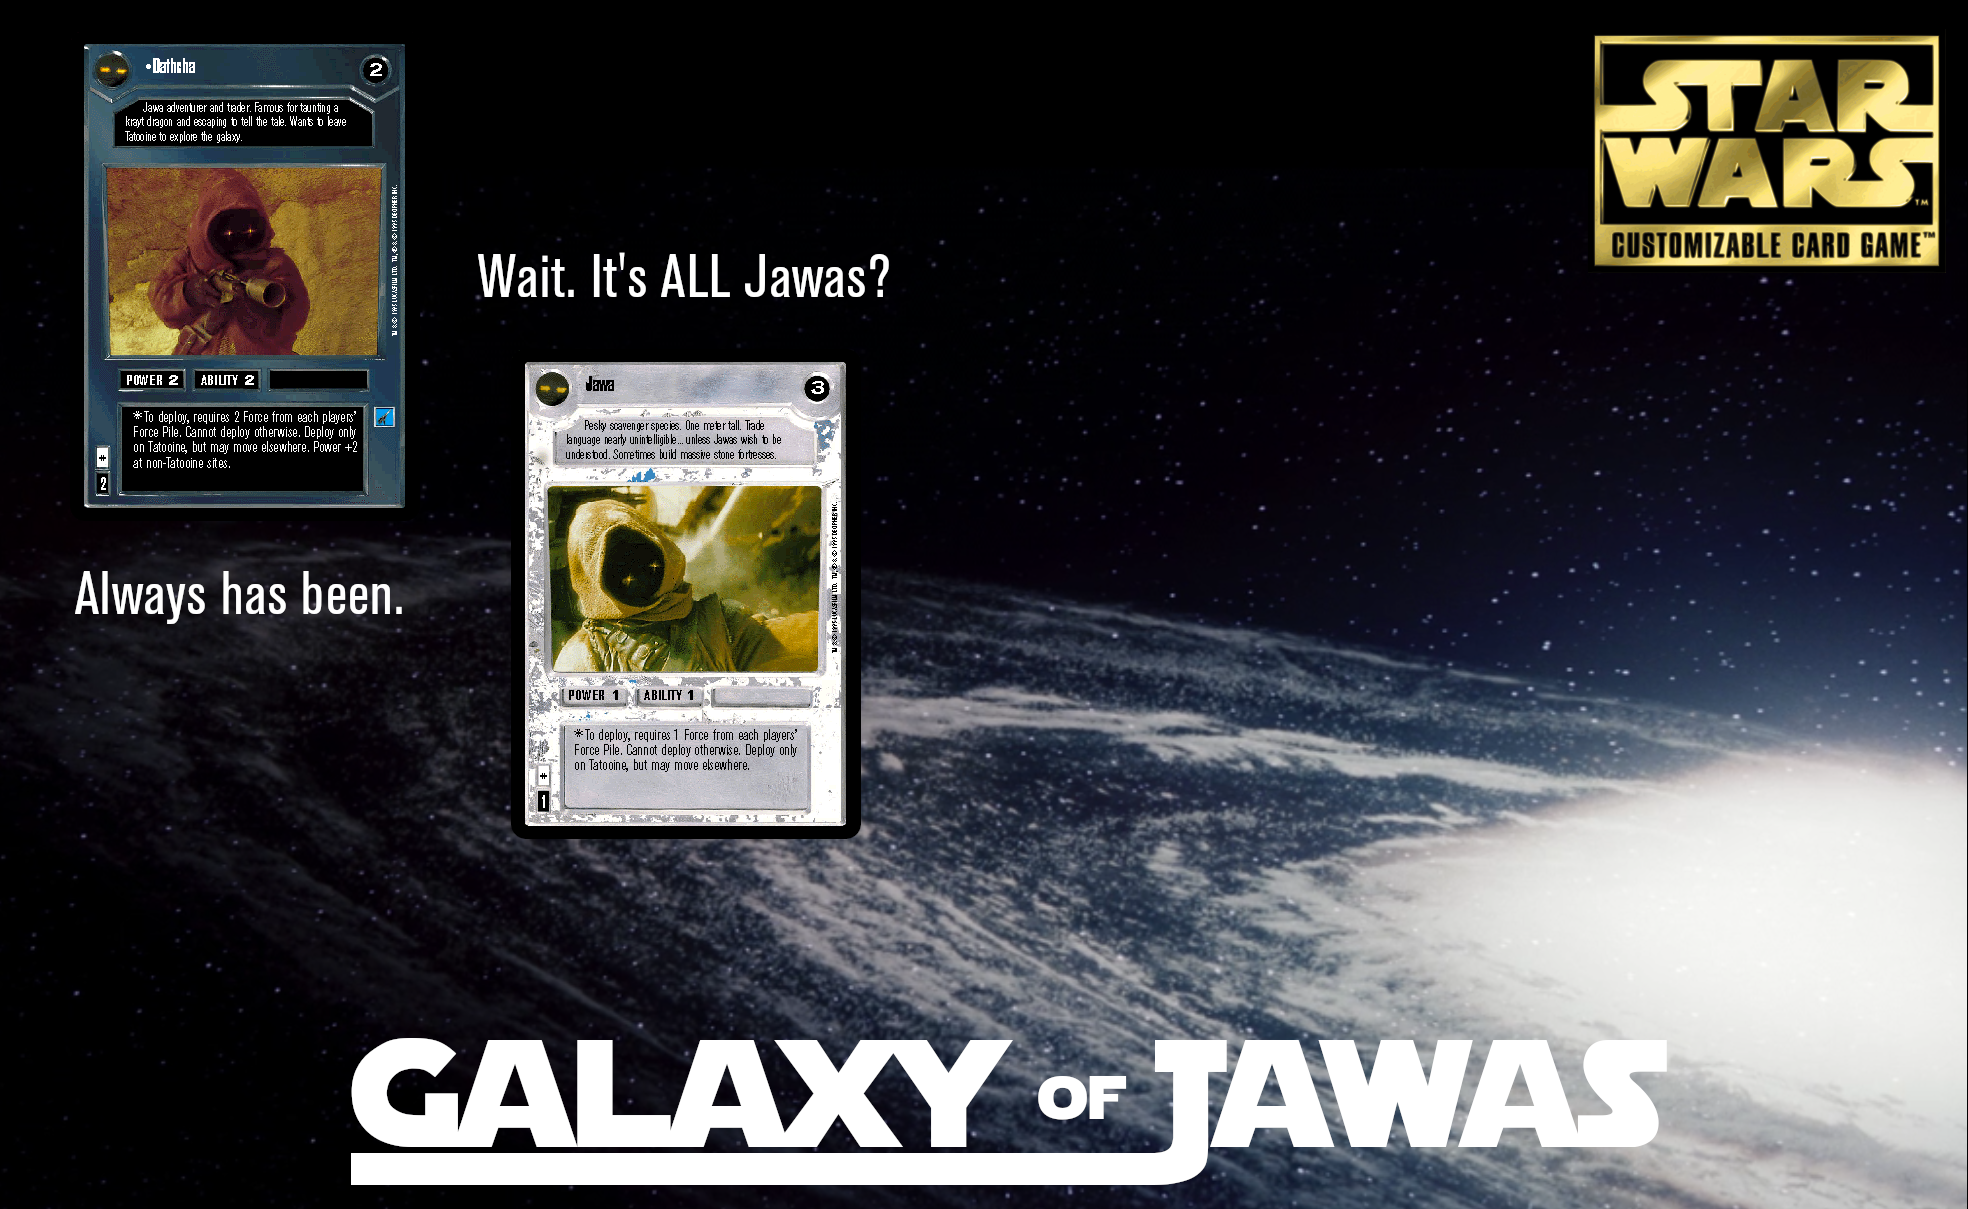 Galaxy of Jawas